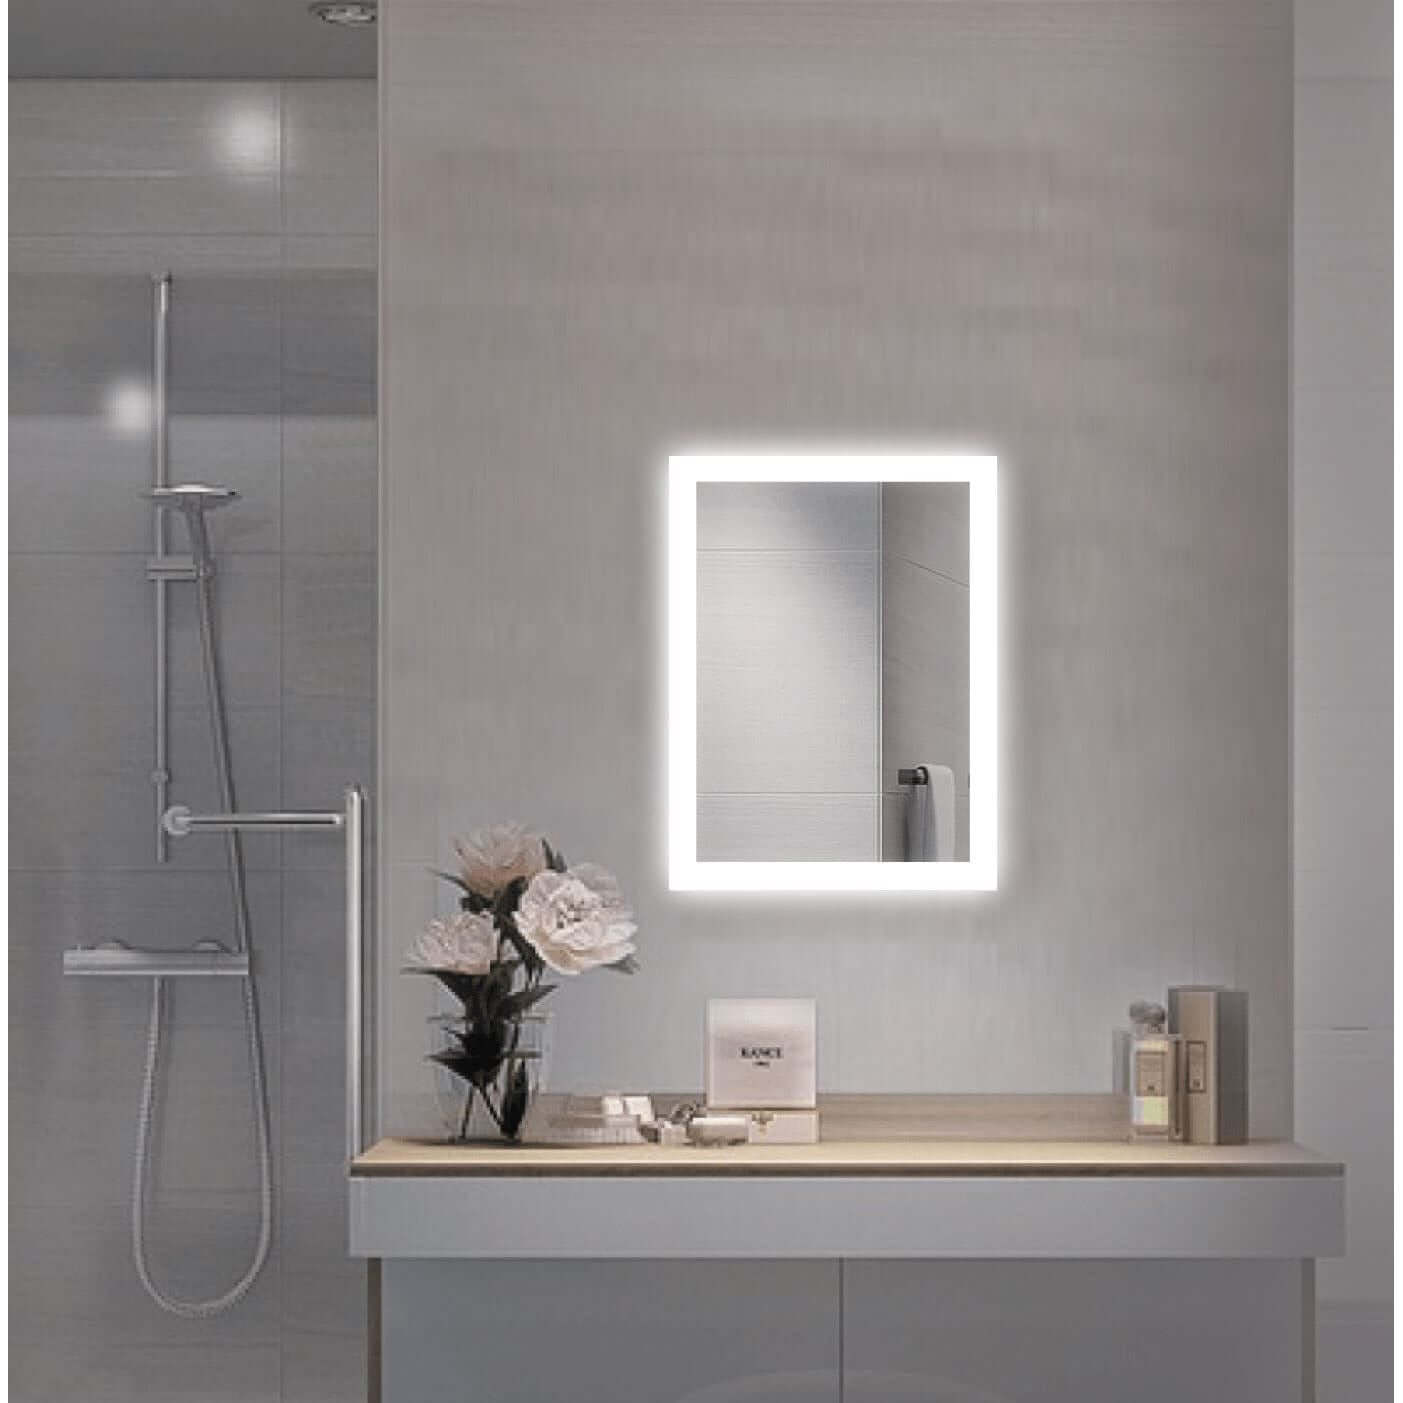 Bijou 15 X 20 LED bathroom mirror by Krugg over a floating vanity sink